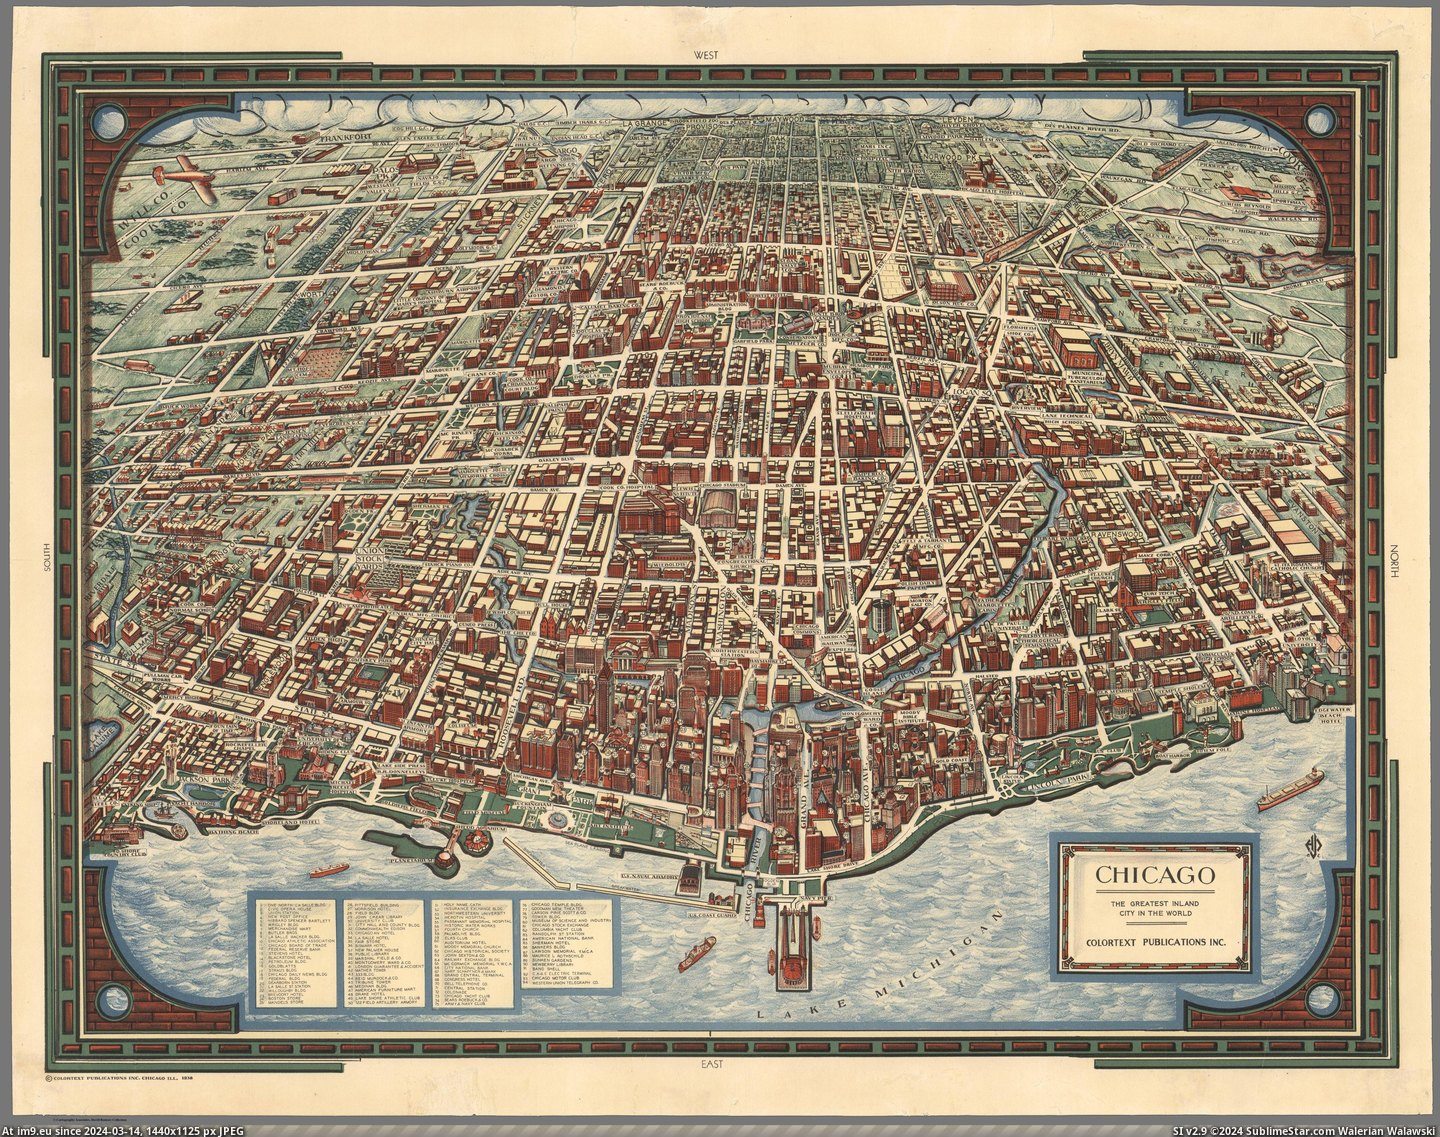  #Chicago  [Mapporn] Chicago (c. 1938) [5520x4324] Pic. (Bild von album My r/MAPS favs))